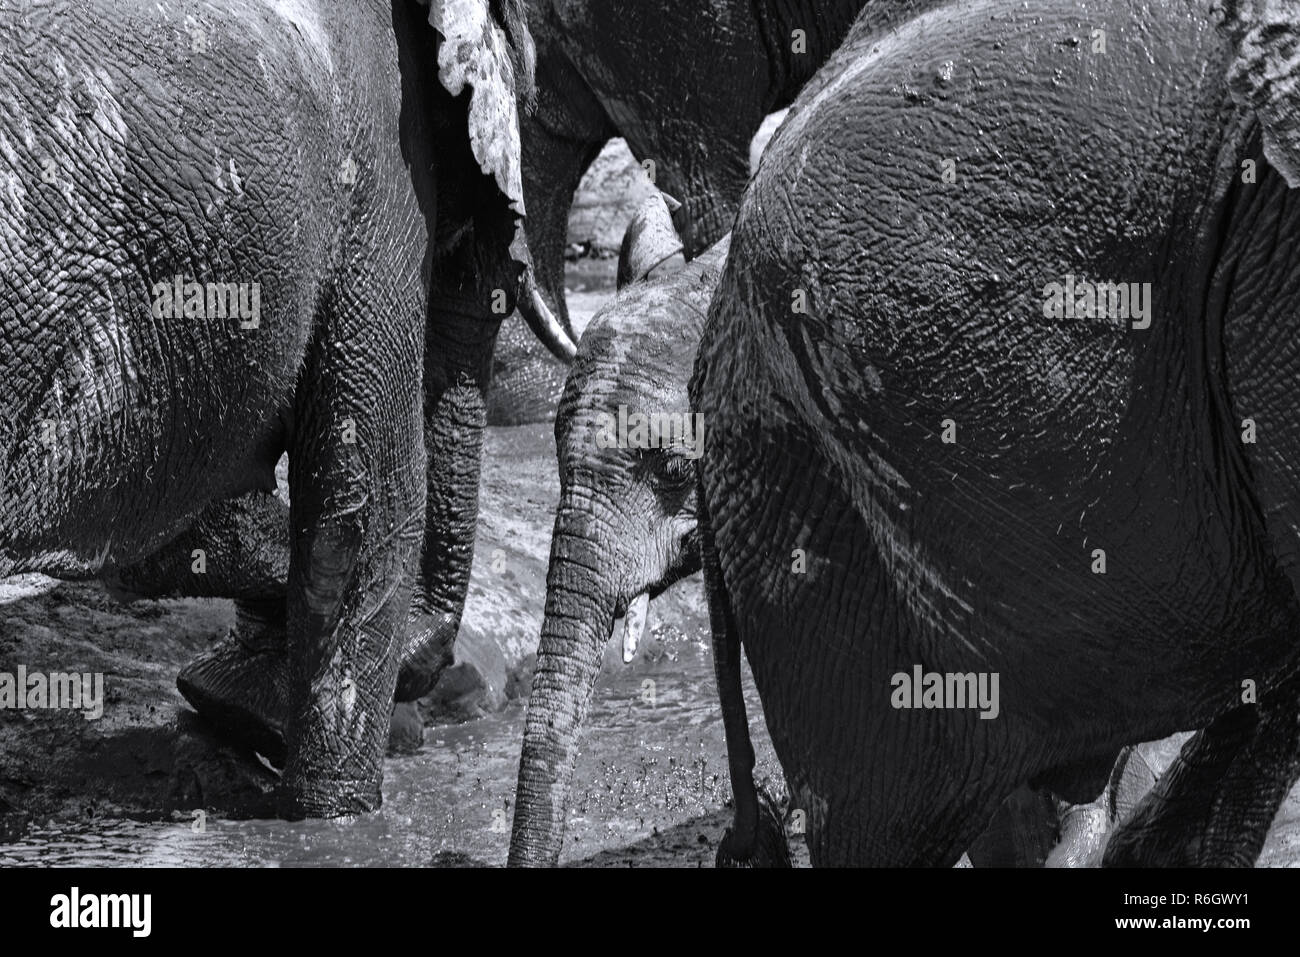 Groupe d'éléphants au bain de boue dans la rivière Chobe, au Botswana en noir et blanc. Banque D'Images